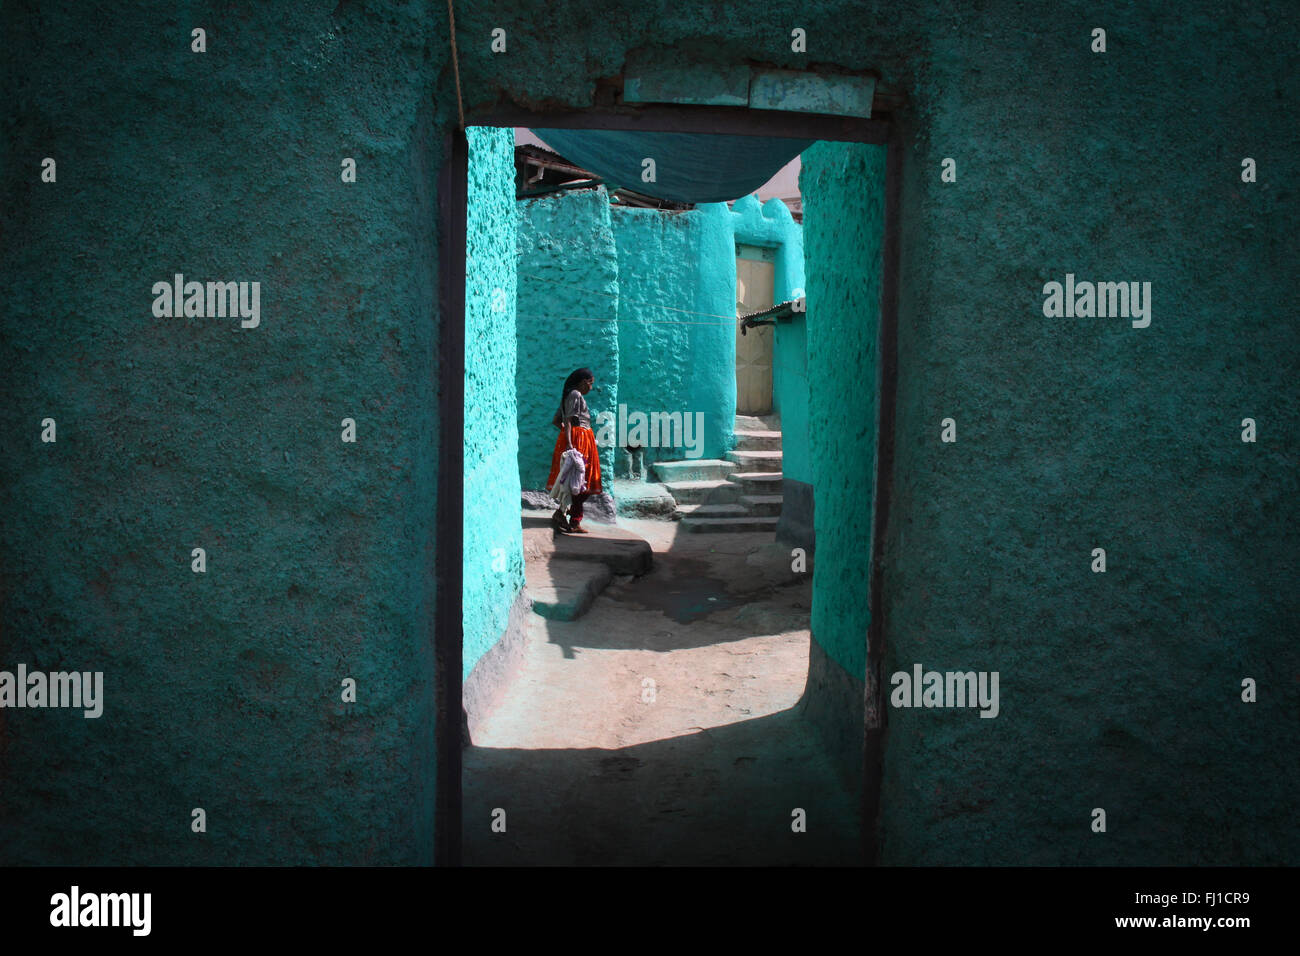 Une femme se tient dans la cour d'une maison traditionnelle turquoise bleu har, Harar, en Ethiopie Banque D'Images